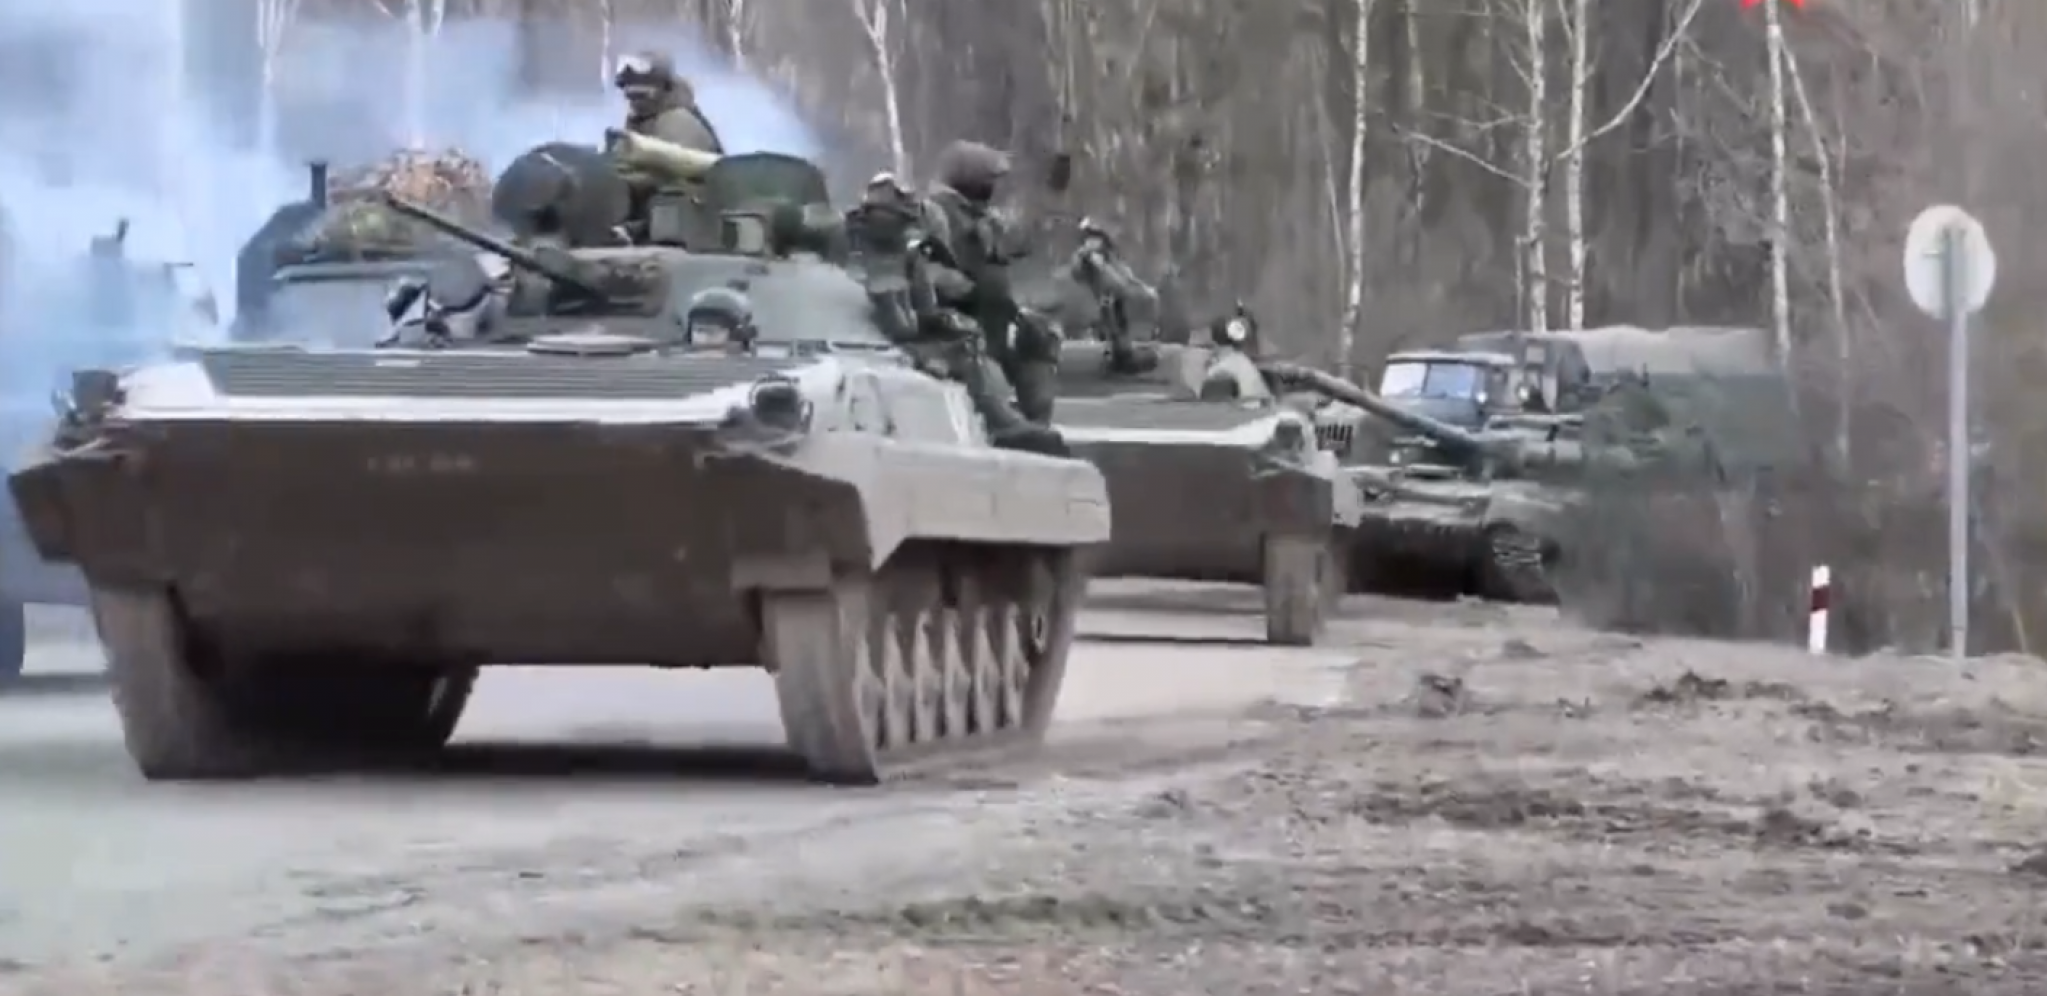 RUSKI ODREDI SE PRIBLIŽAVAJU VAŽNOM GRADU Ukrajinske snage u strahu, situacija na frontu složena